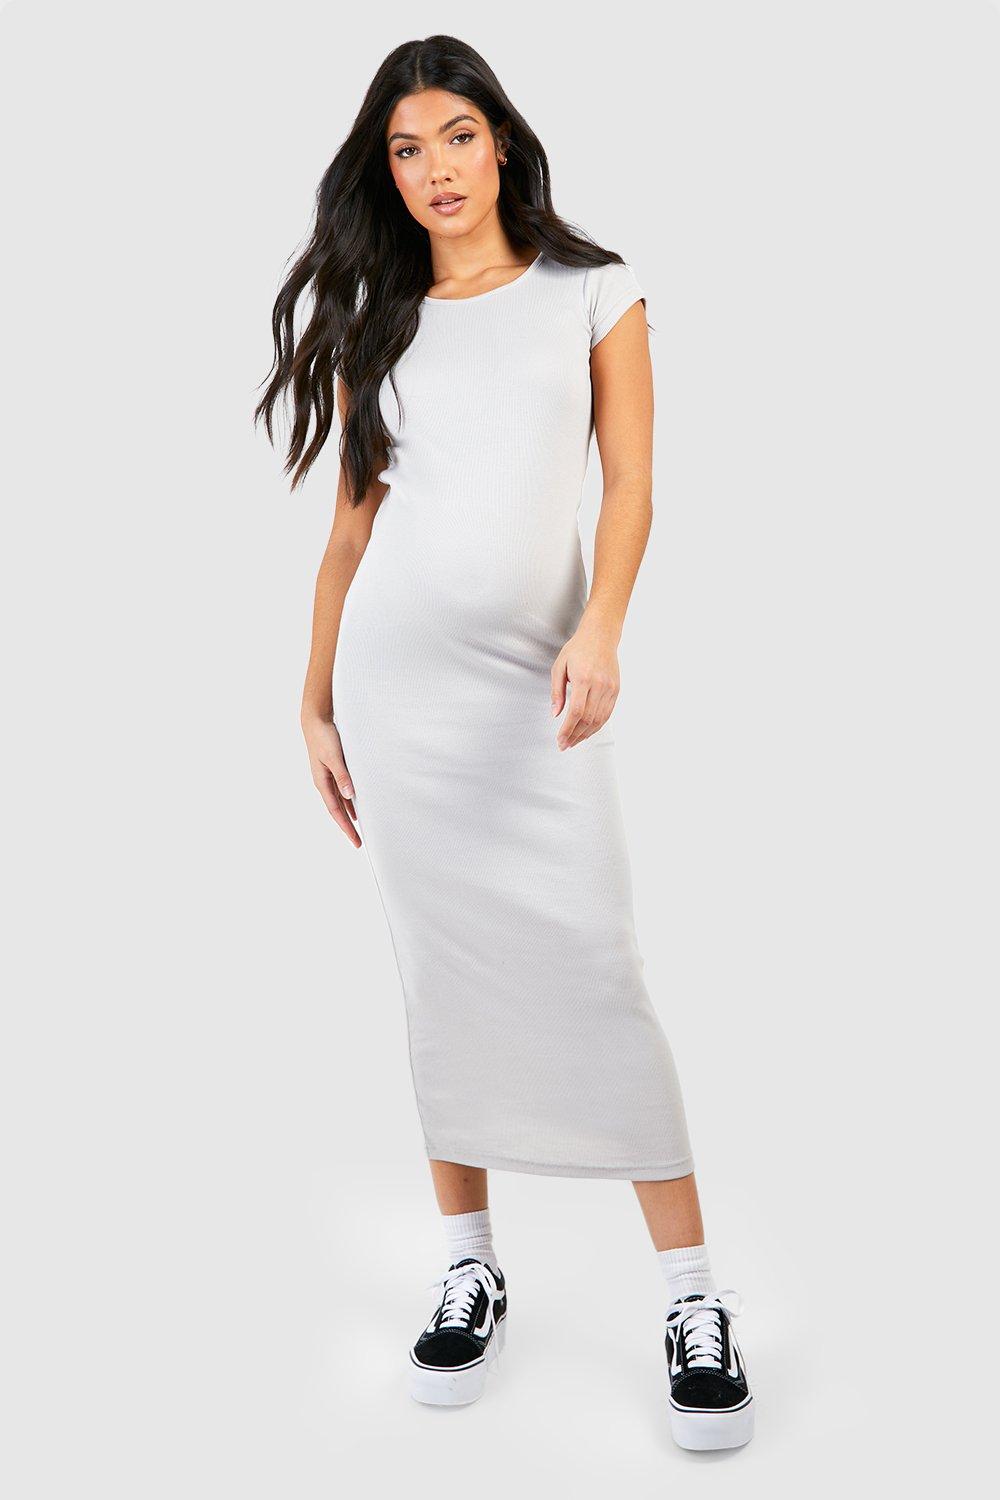 Booho Maternity Cap Sleeve Midaxi Rib Dress-2325-Grey